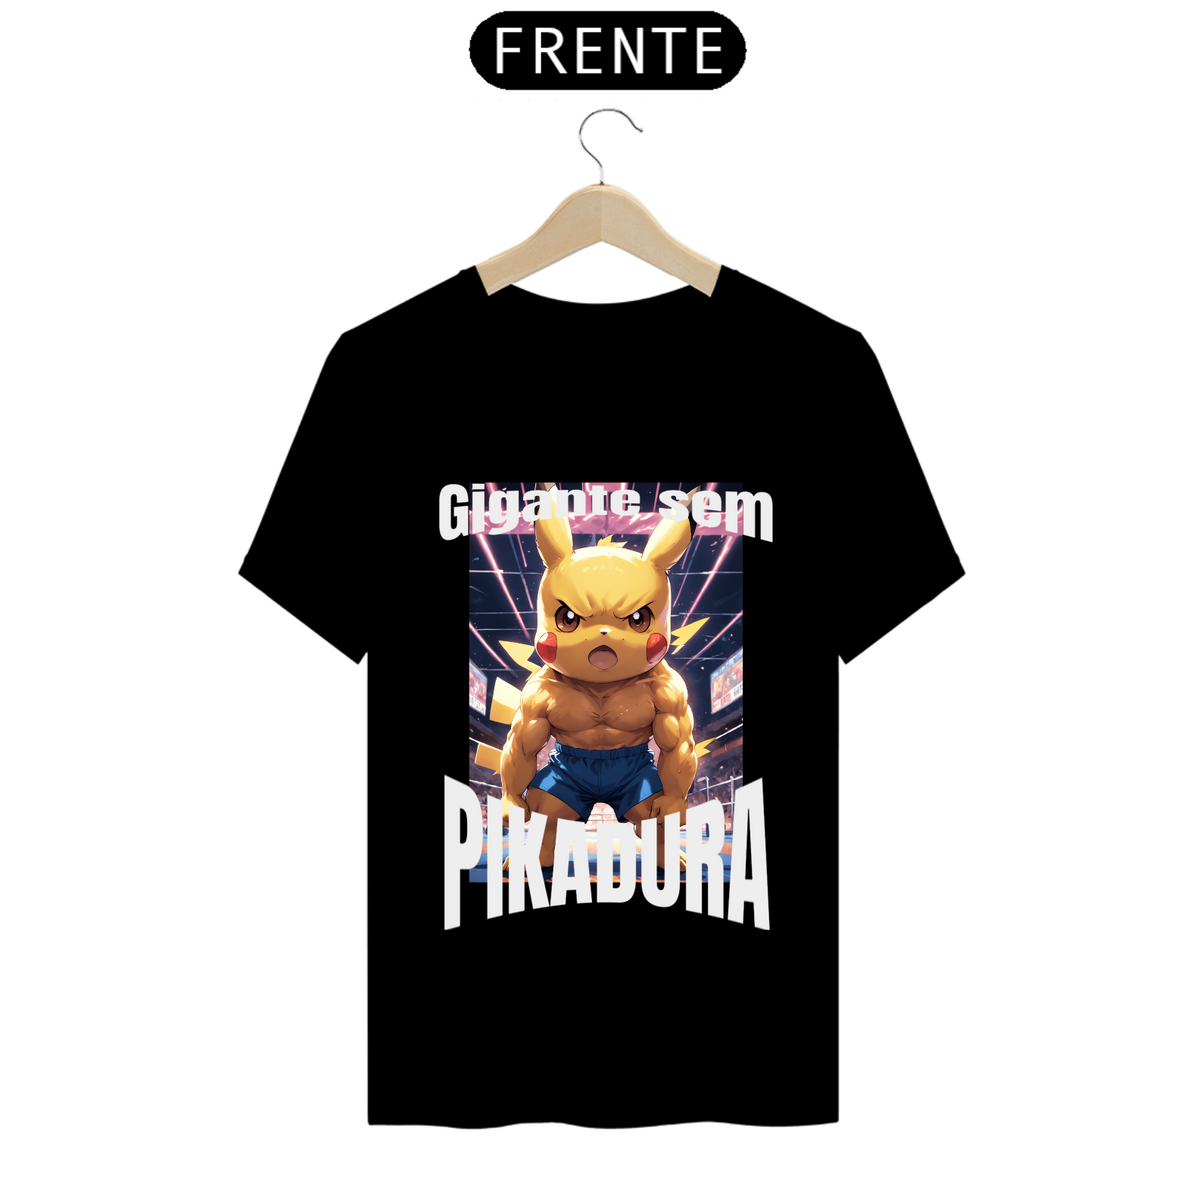 Nome do produto: Camiseta pikachu gigante sem pikadura